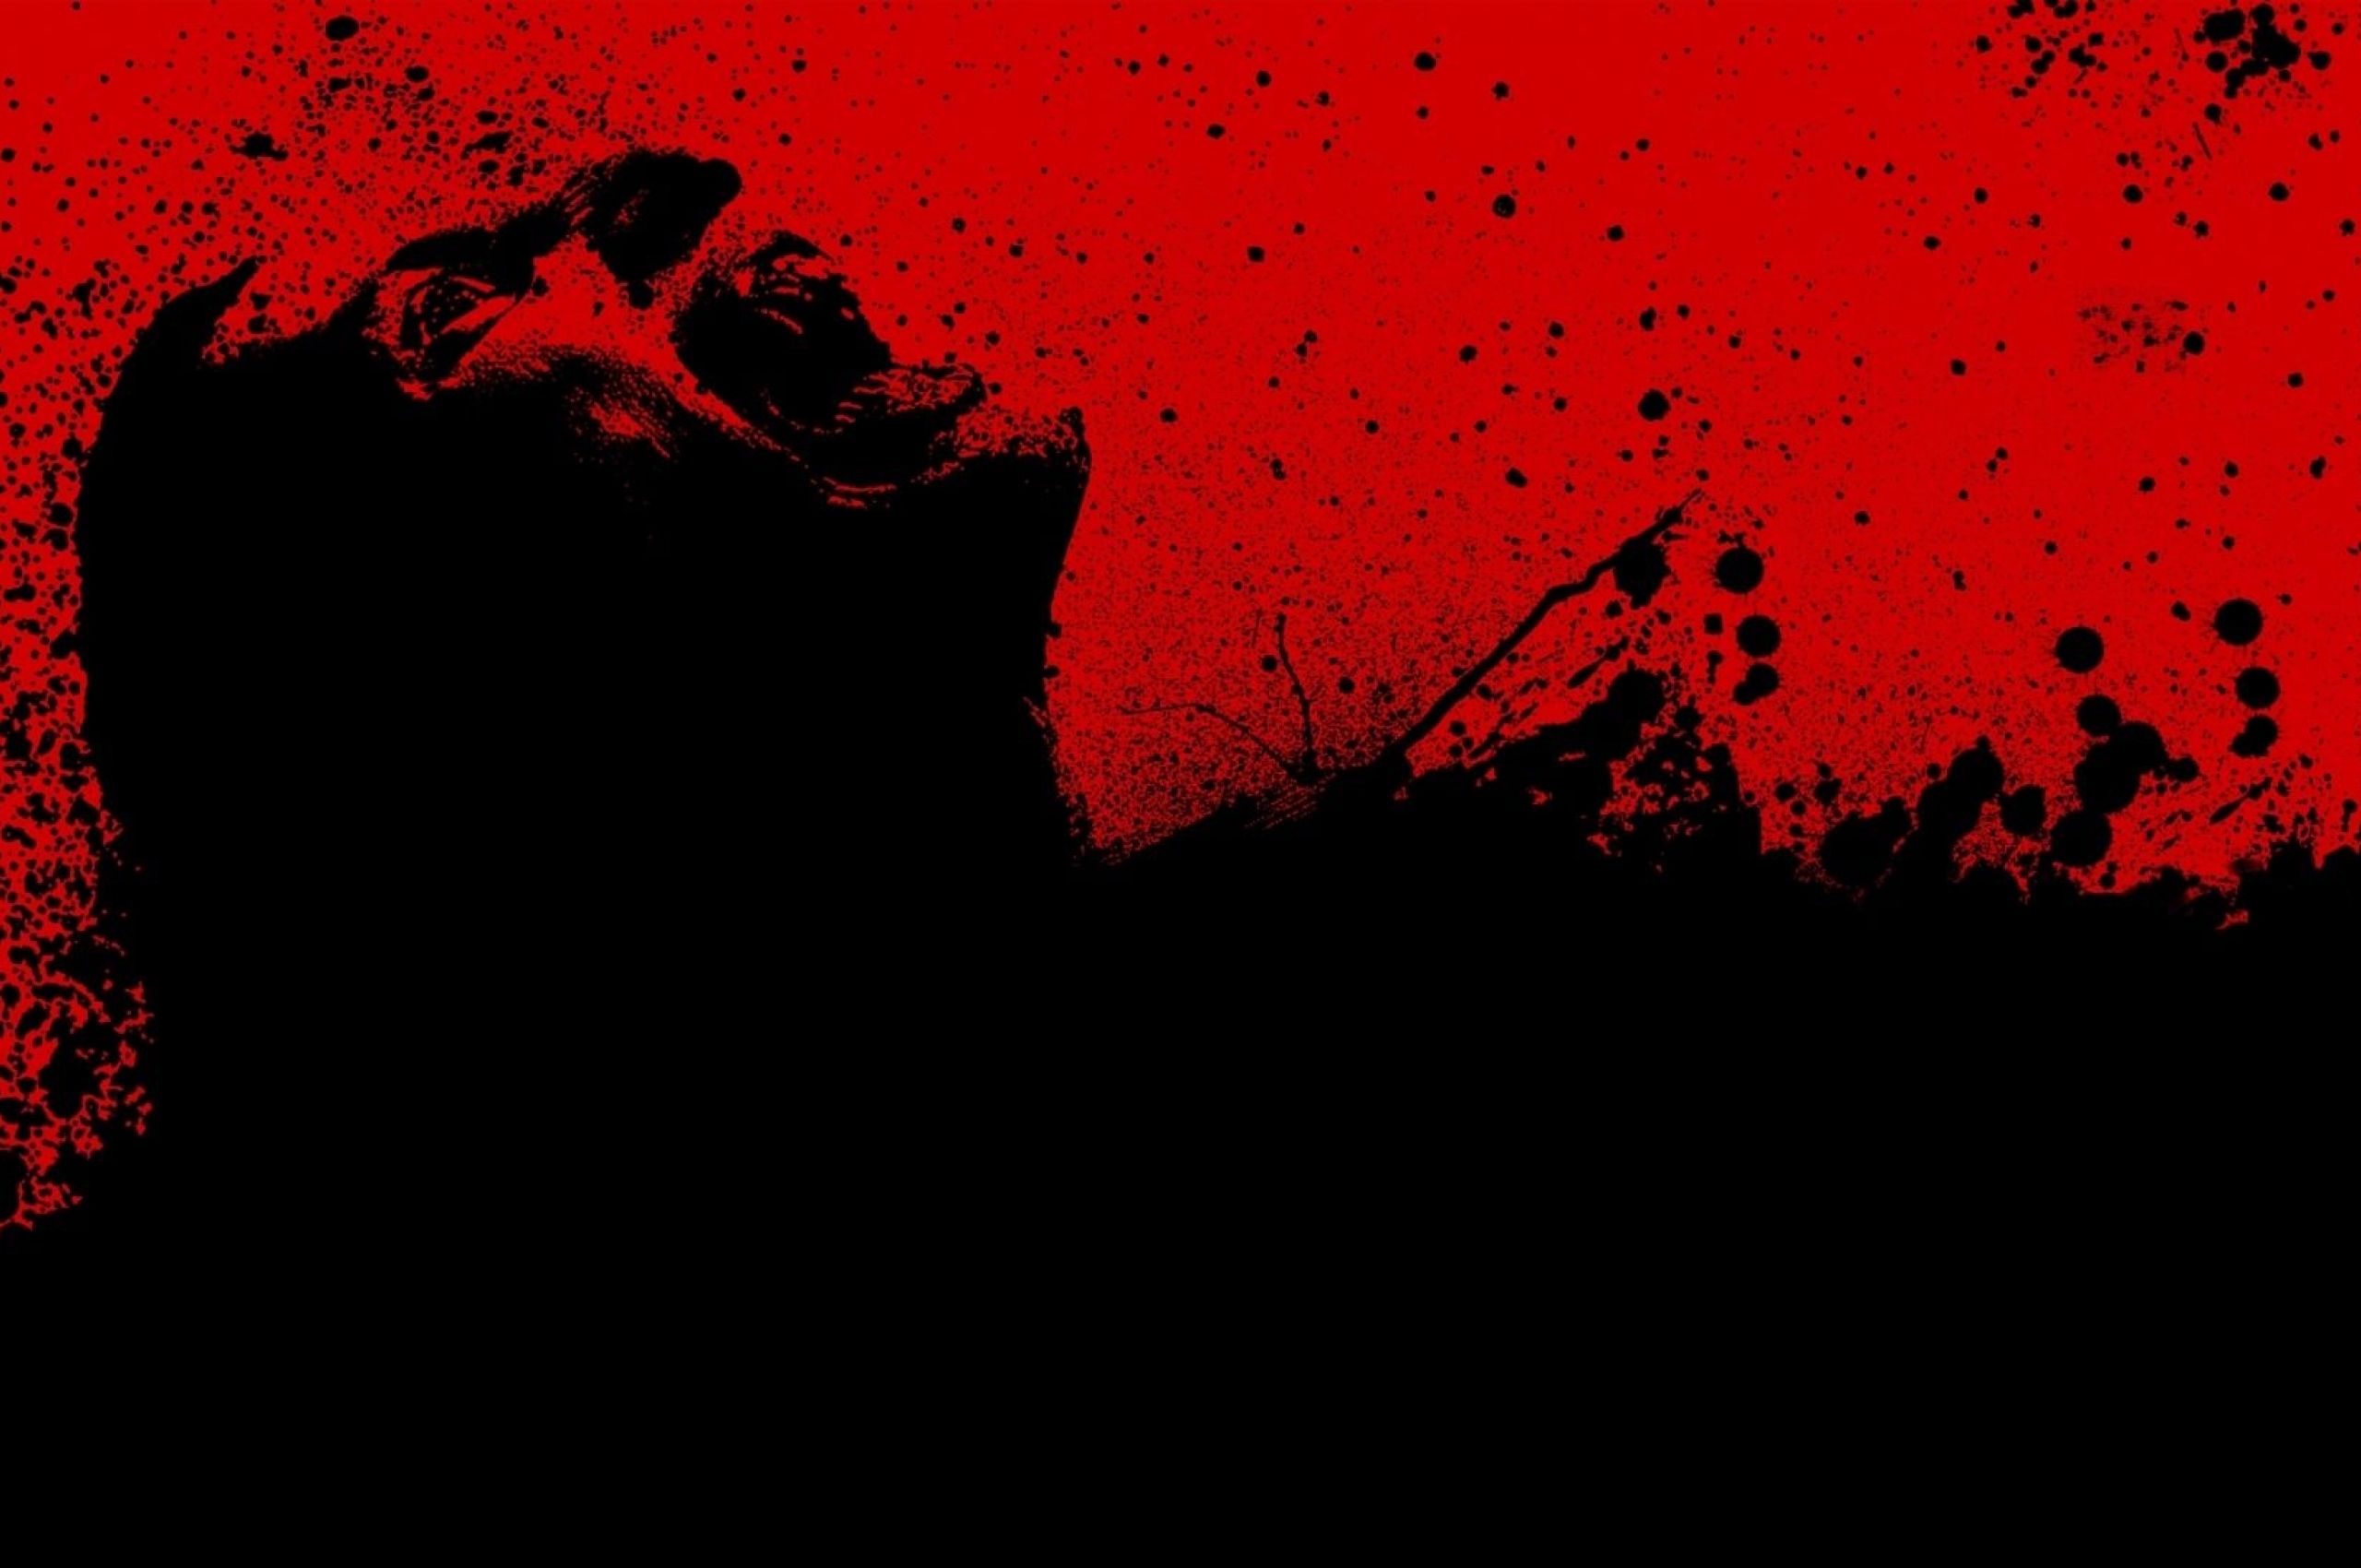 Free download 30 days of night Red Black Blood Wallpaper